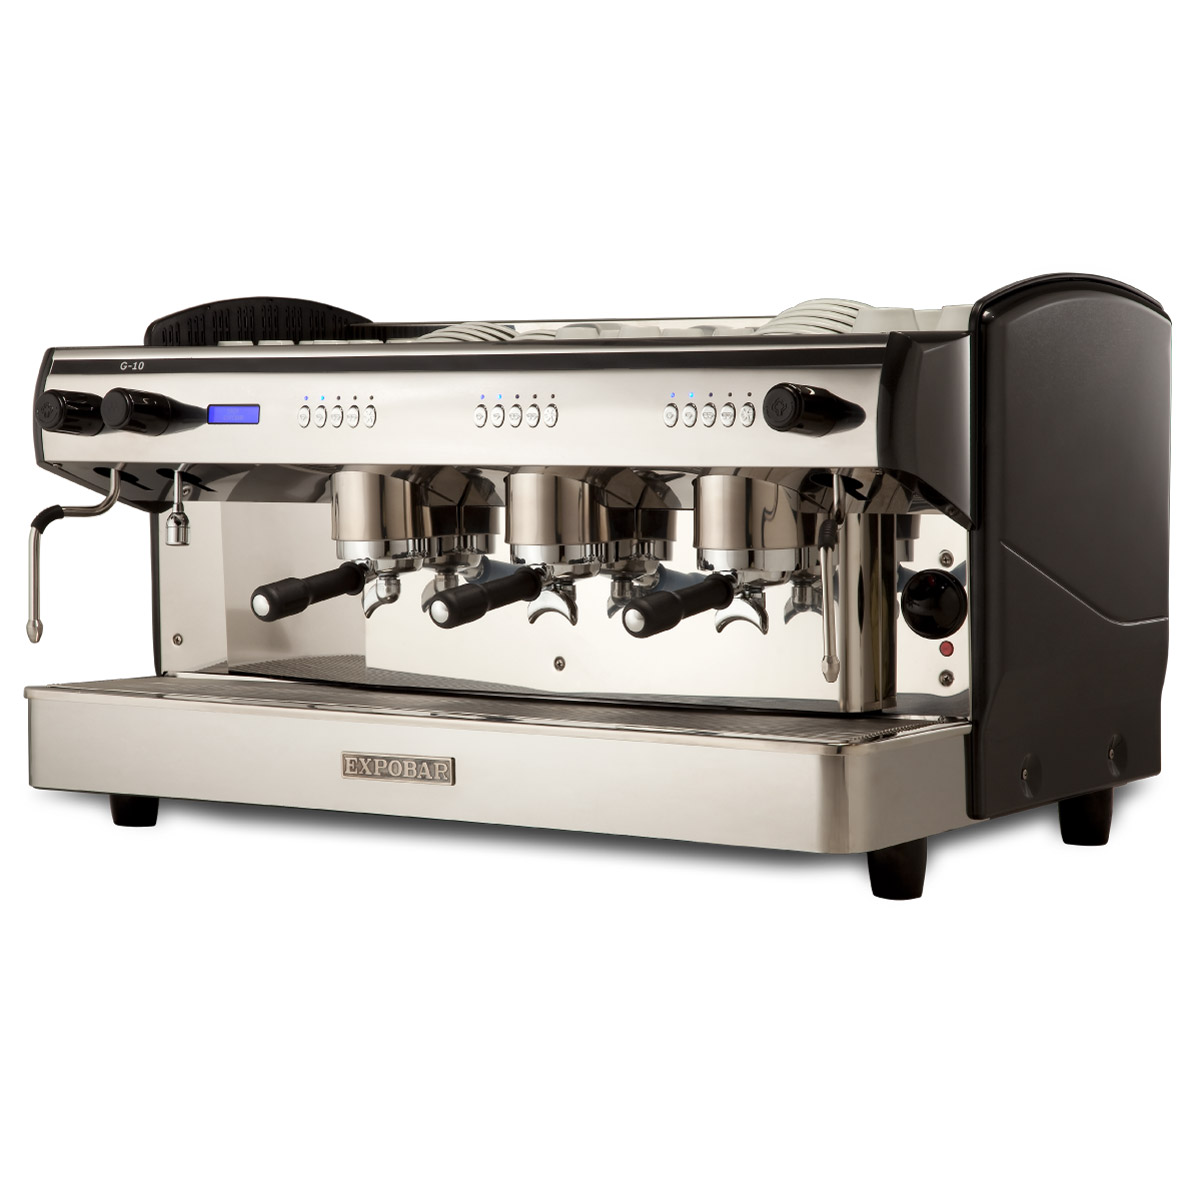 Votre machine a cafe a grain : utilisation professionnelle ou domestique ?  (par Buroespresso)